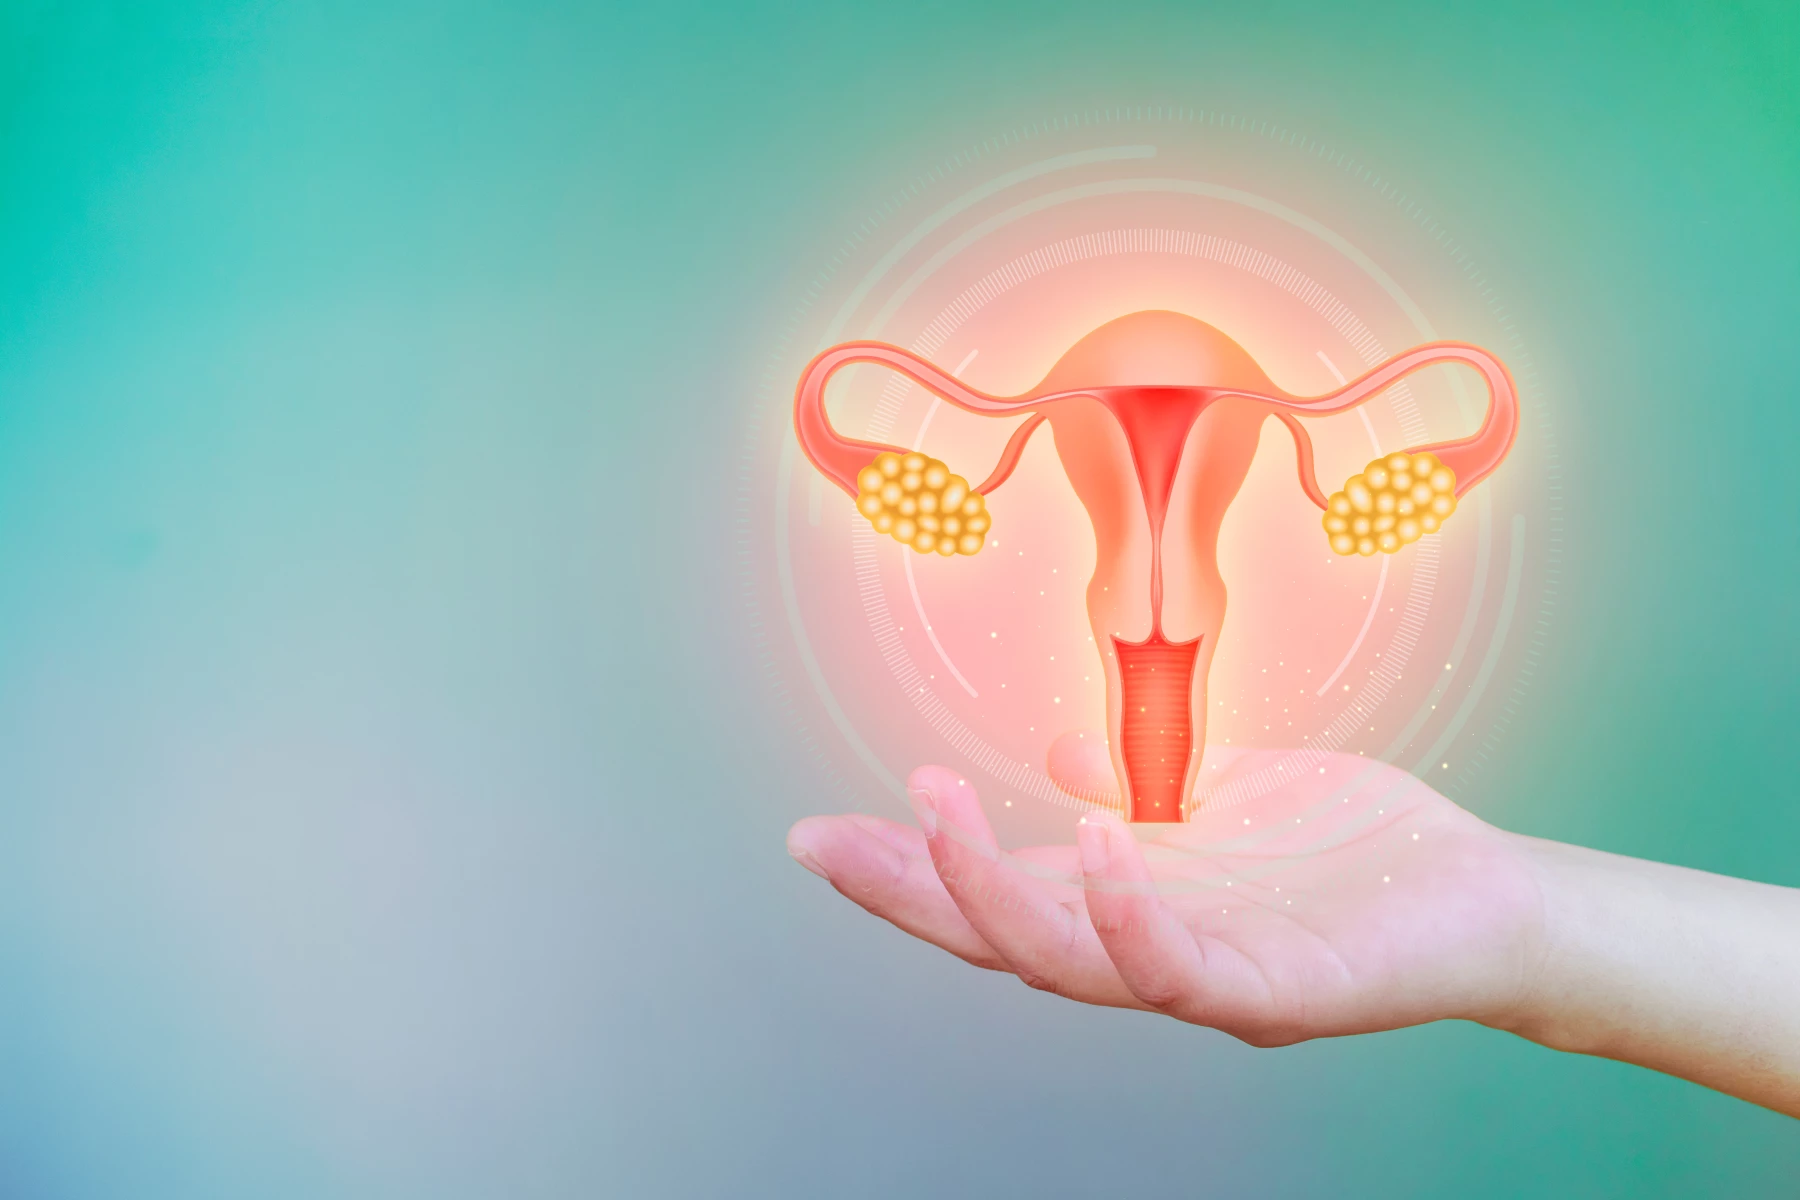 Le syndrome des ovaires polykystiques (SOPK) - Service de gynécologie